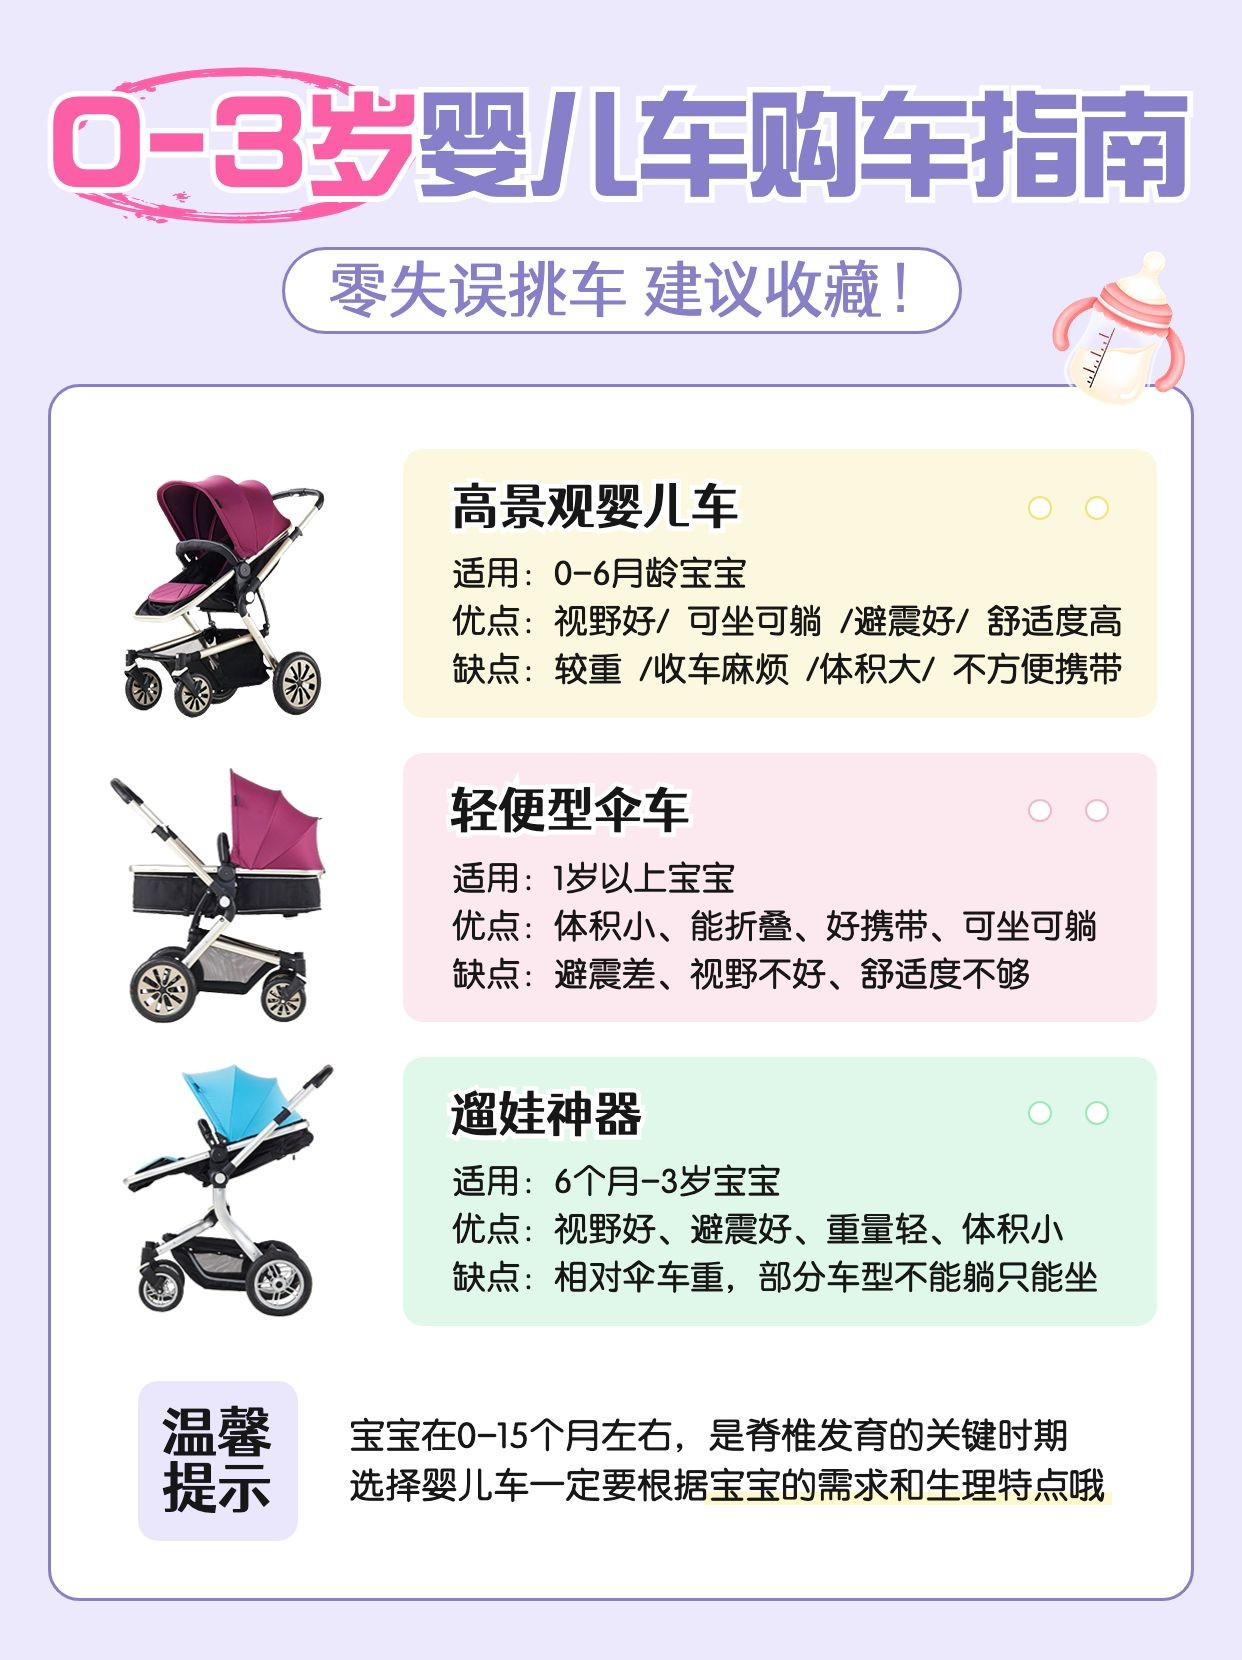 母婴亲子婴儿车产品测评科普小红书配图